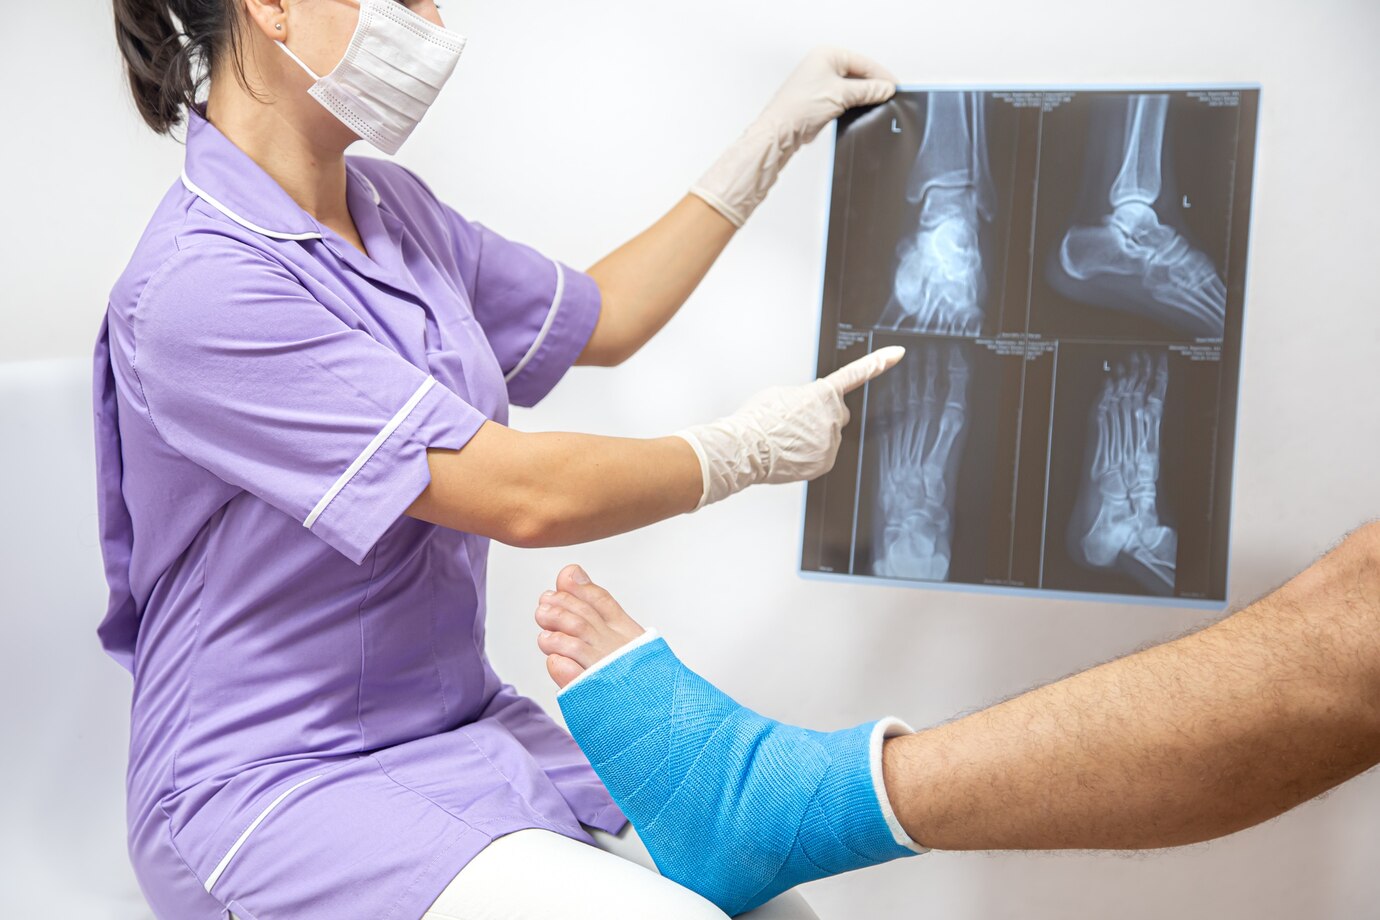 fractura-osea-pie-pierna-paciente-masculino-que-siendo-examinado-doctora-hospital_169016-7109